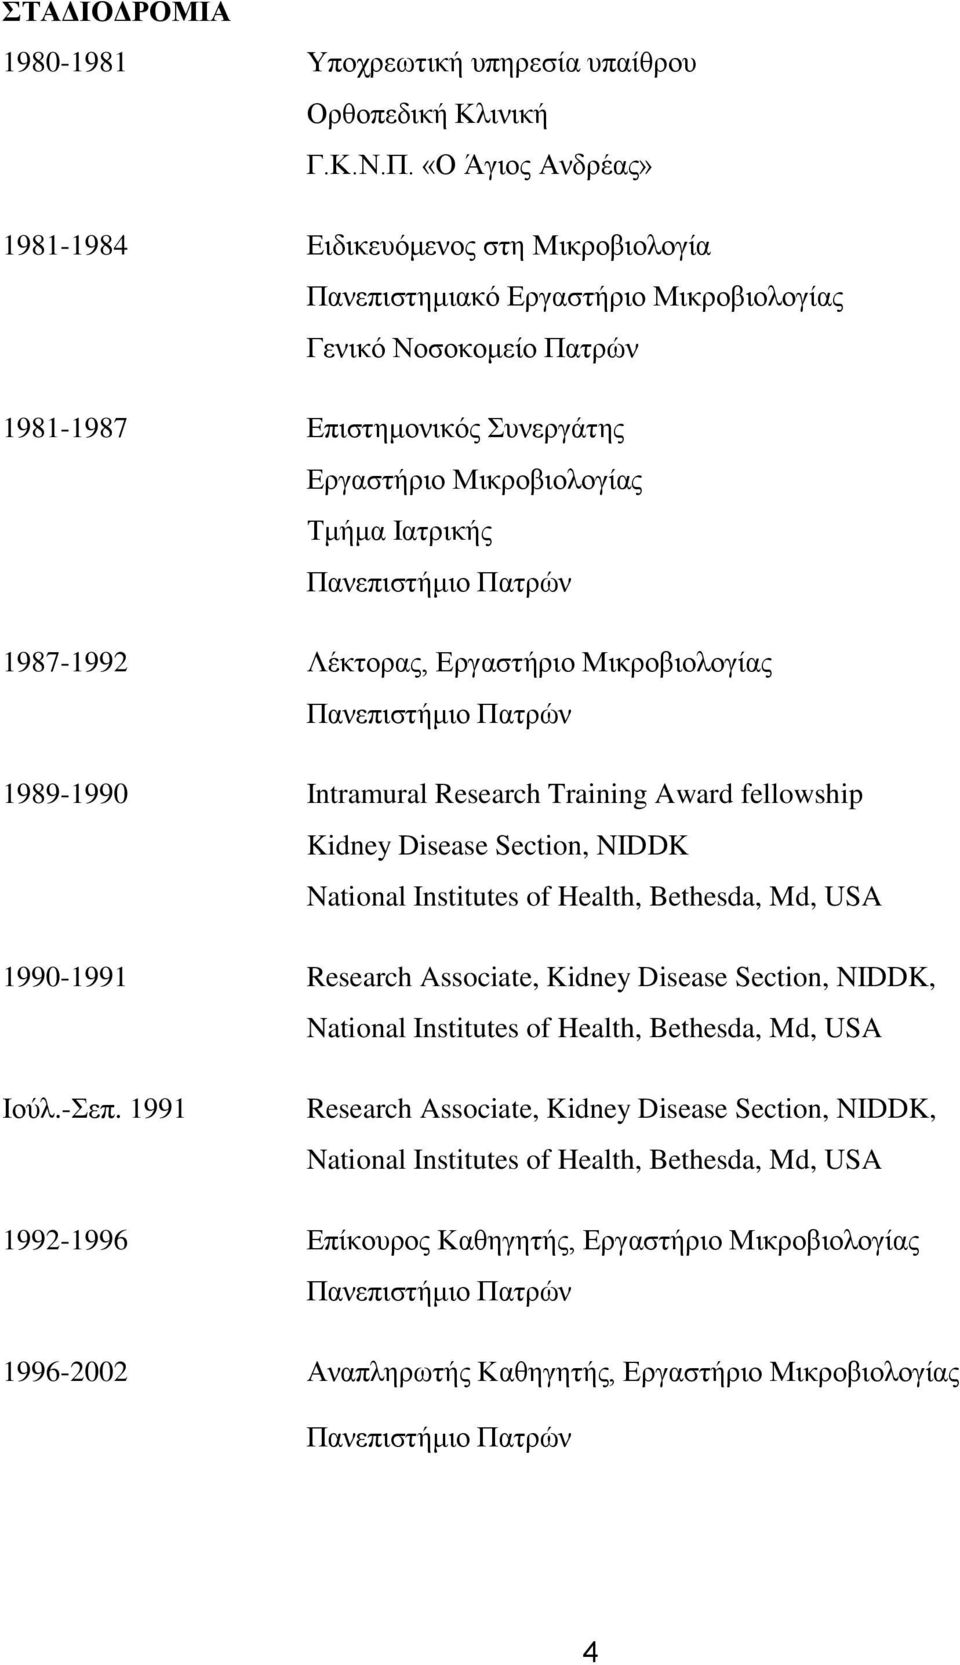 Ιατρικής Πανεπιστήμιο Πατρών 1987-1992 Λέκτορας, Εργαστήριο Μικροβιολογίας Πανεπιστήμιο Πατρών 1989-1990 Intramural Research Training Award fellowship Kidney Disease Section, NIDDK National